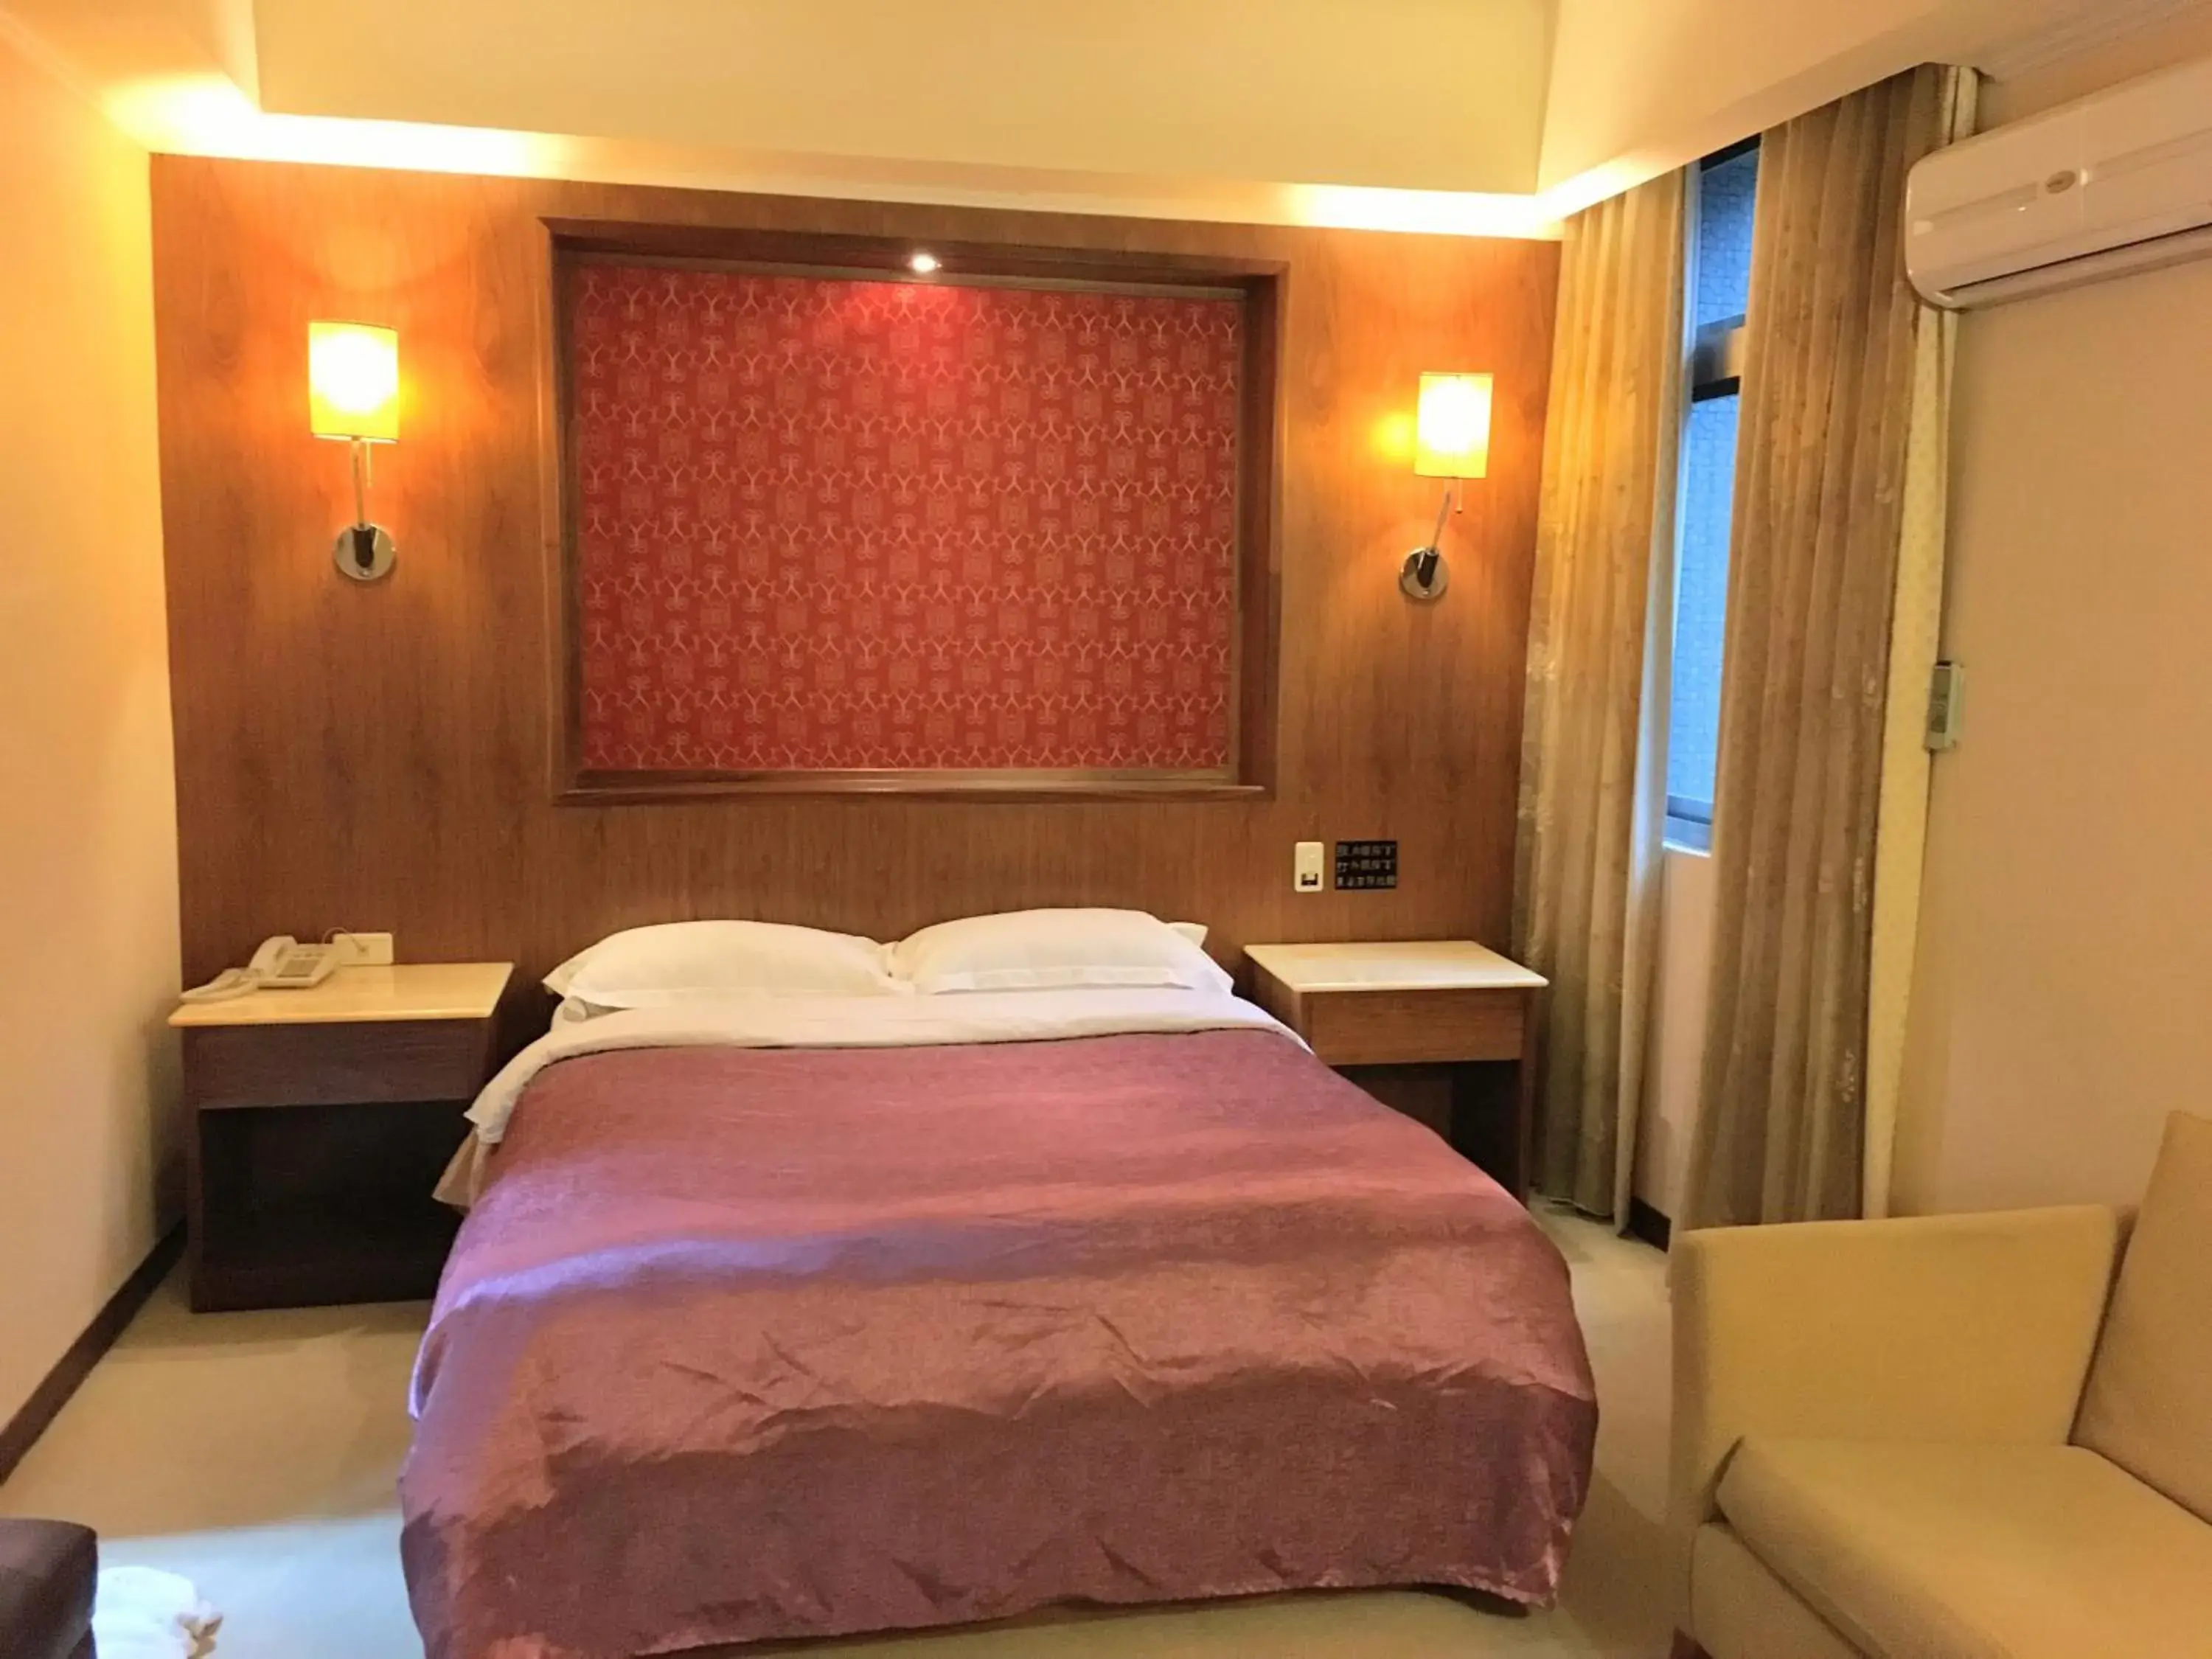 Bed in Eastern Beauty Hotel